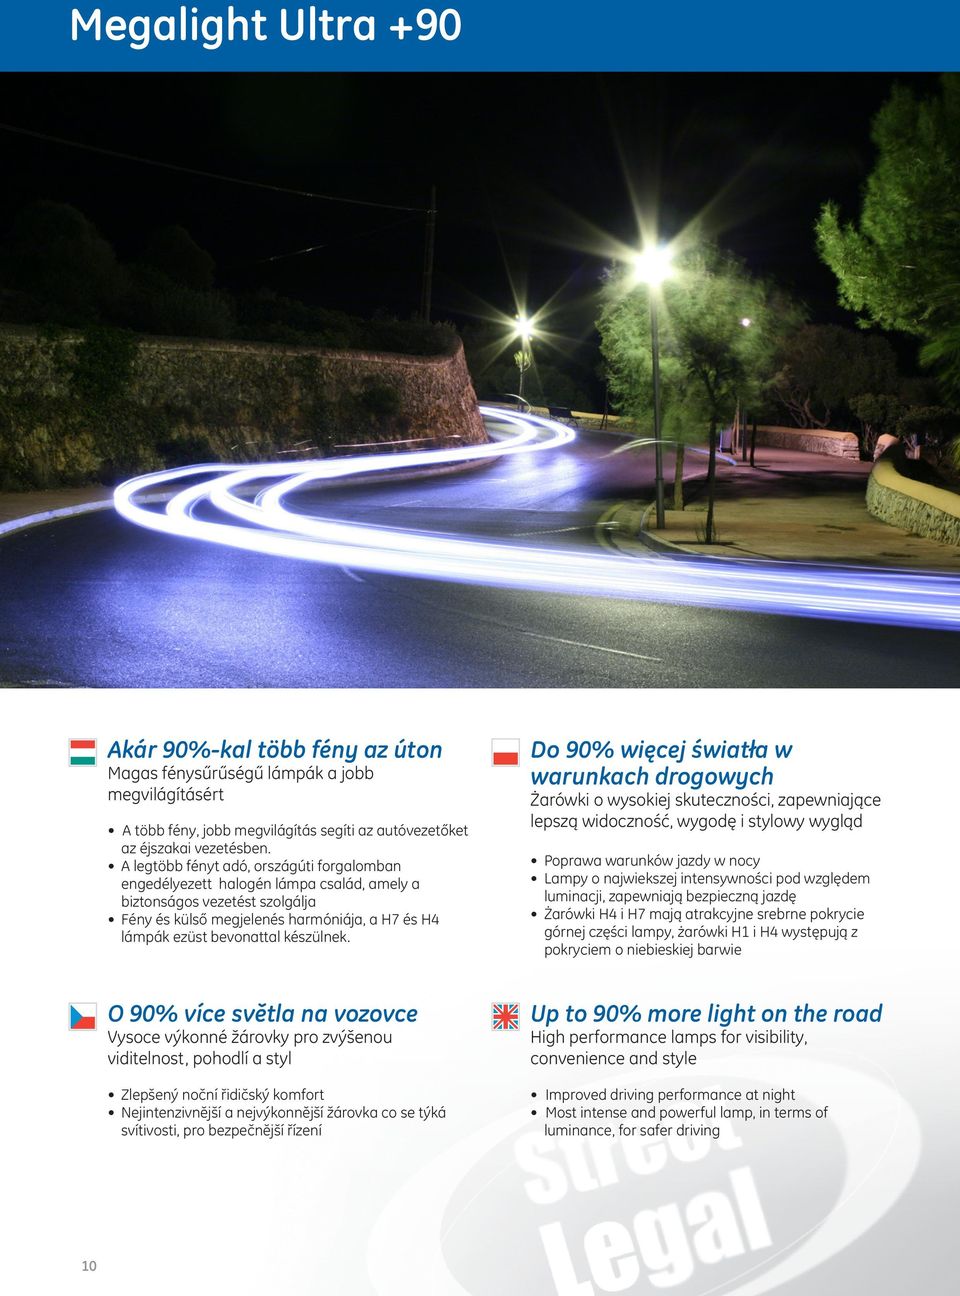 Do 90% więcej światła w warunkach drogowych Żarówki o wysokiej skuteczności, zapewniające lepszą widoczność, wygodę i stylowy wygląd Poprawa warunków jazdy w nocy Lampy o najwiekszej intensywności